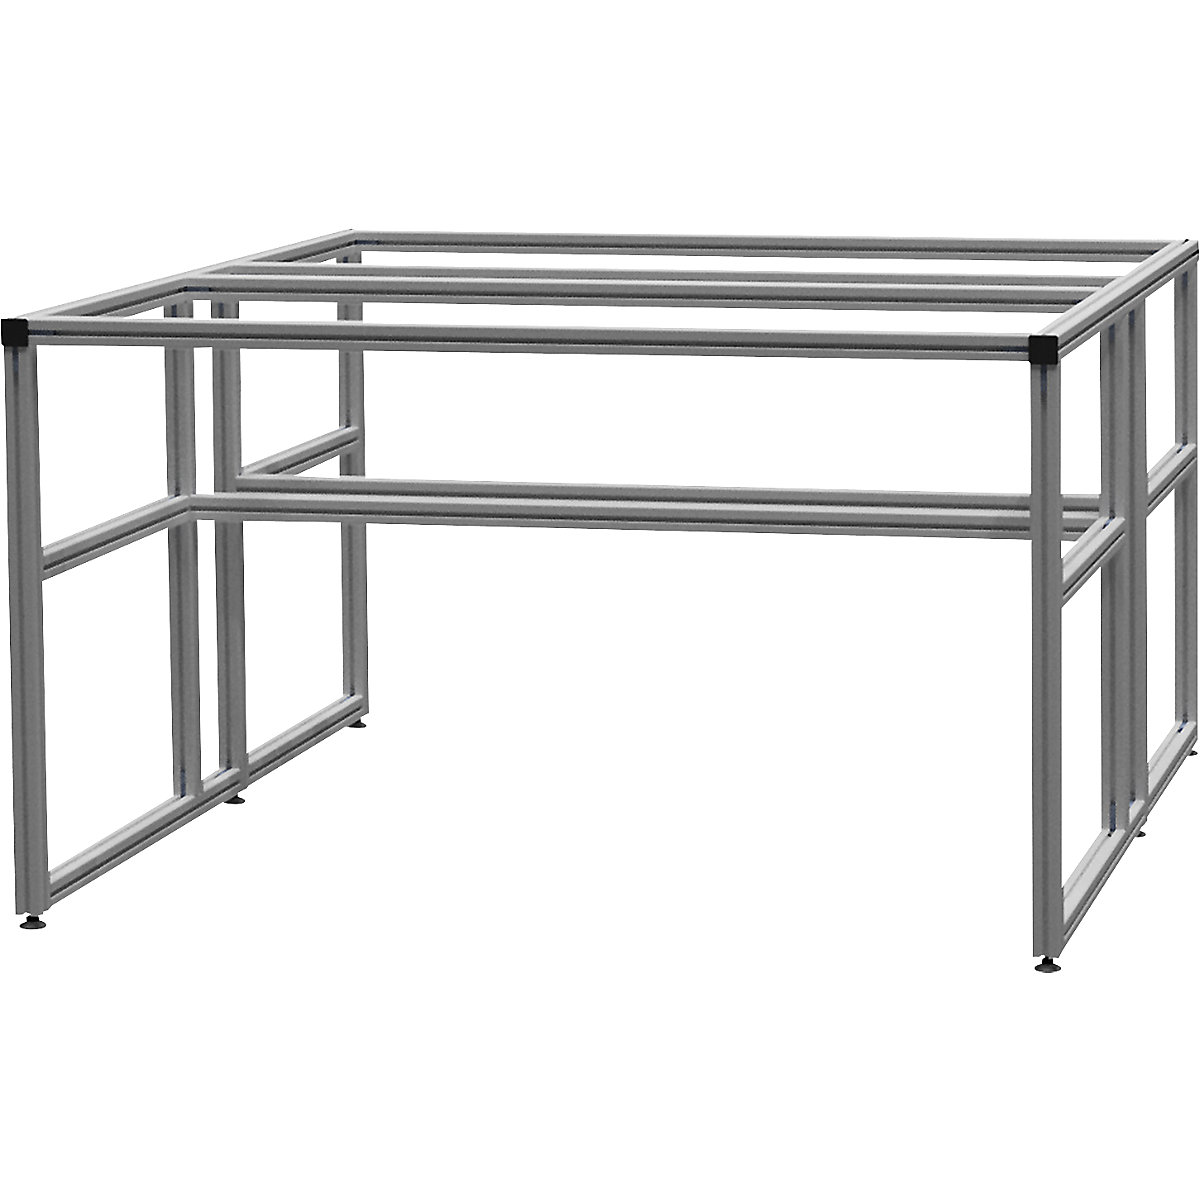 Stół warsztatowy aluminiowy workalu&reg;, szkielet podstawowy dwustronny - bedrunka hirth